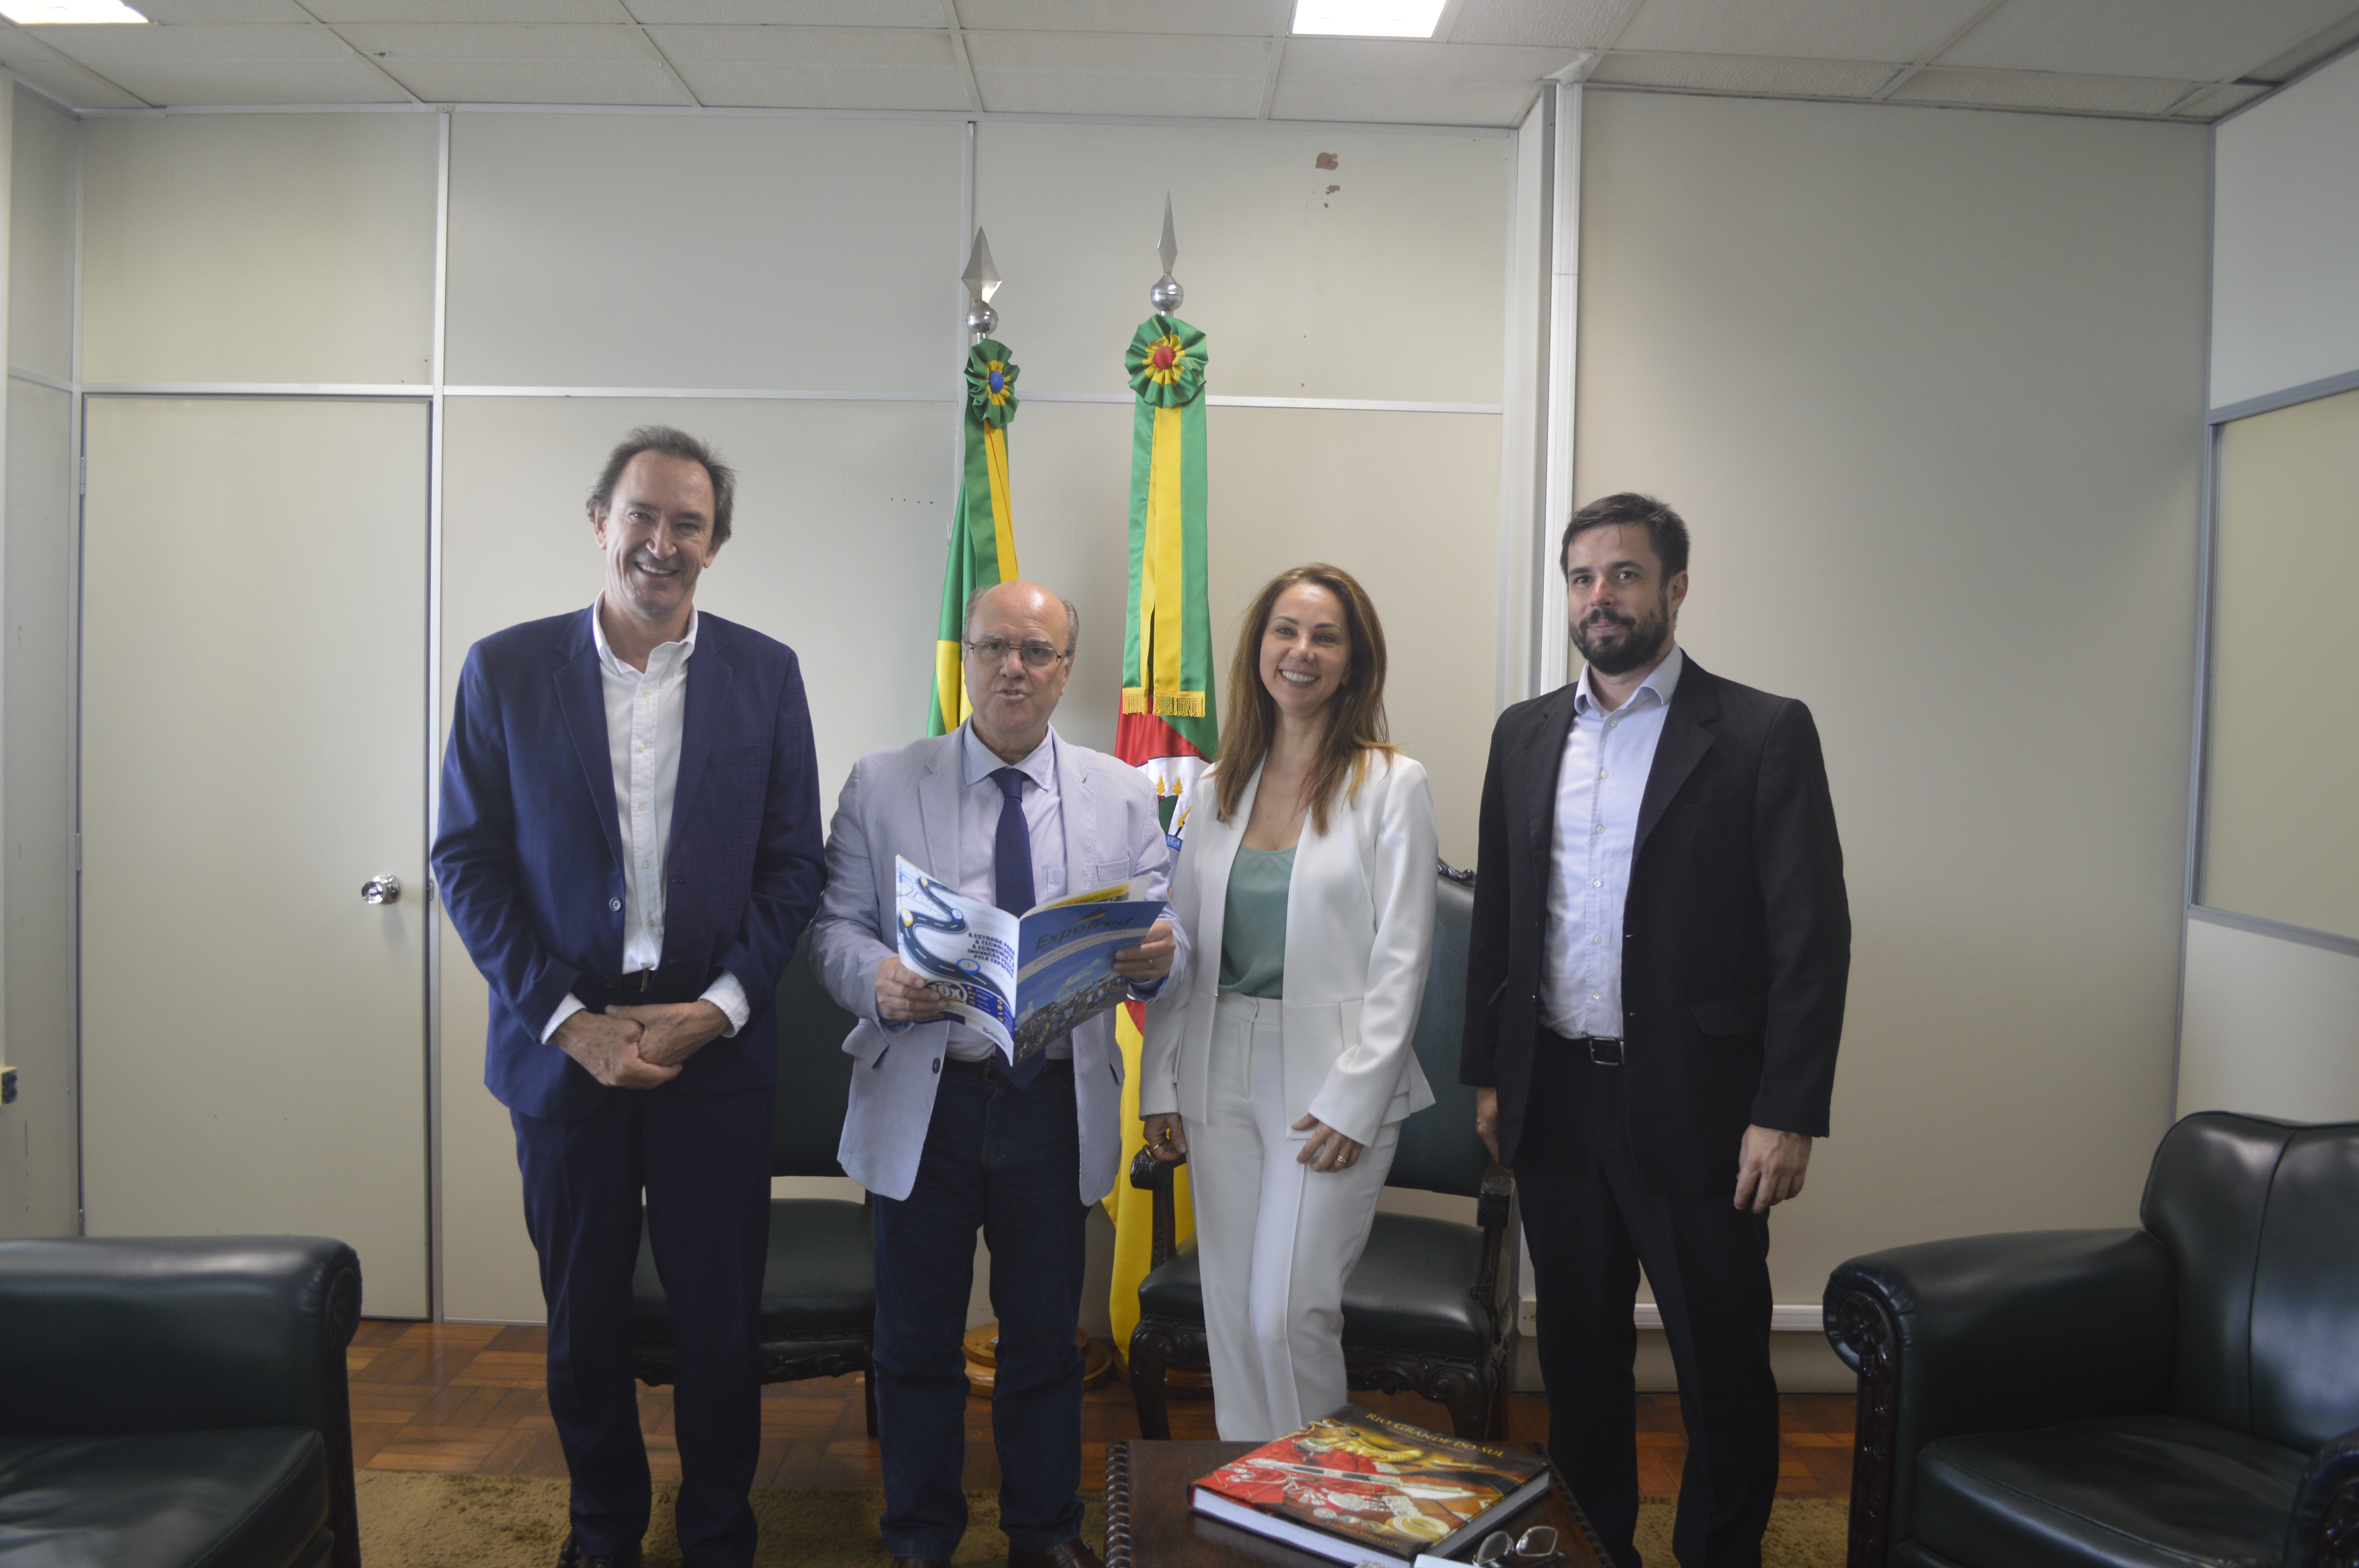 Expofred 2018: Comissão organizadora realiza reunião com possíveis patrocinadores em Porto Alegre